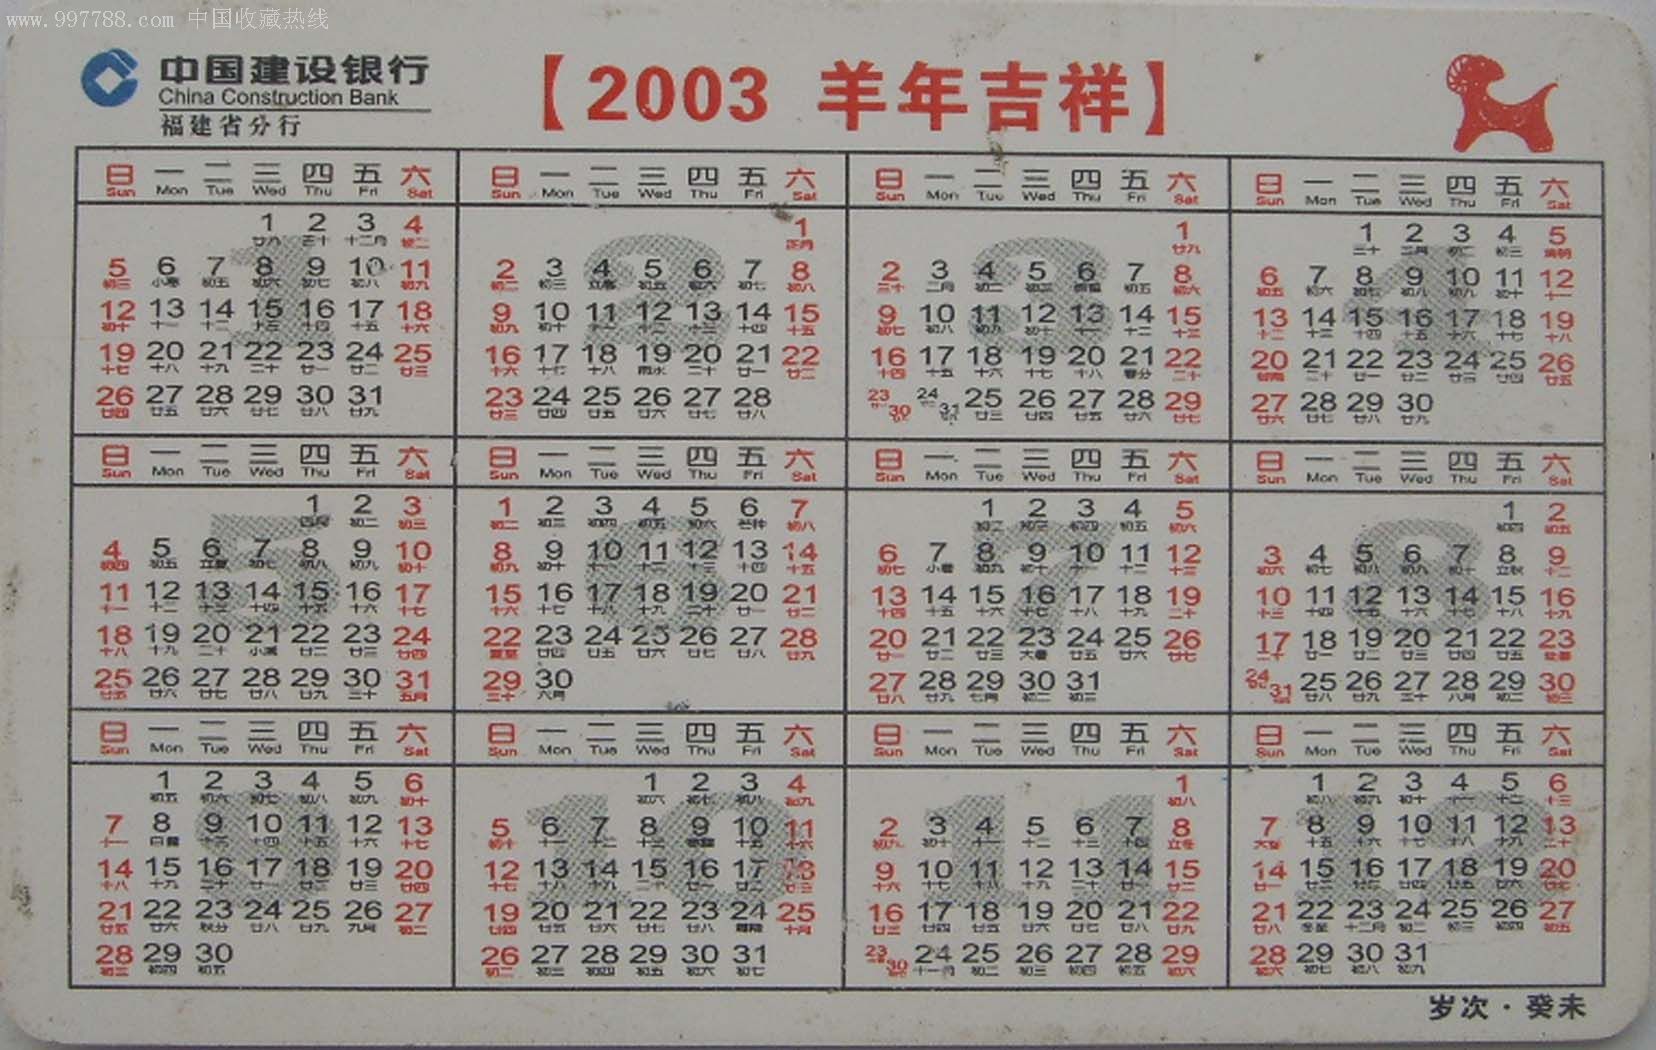 [冲二钻特价]中国建设银行福建省分行2003癸未羊年年历卡